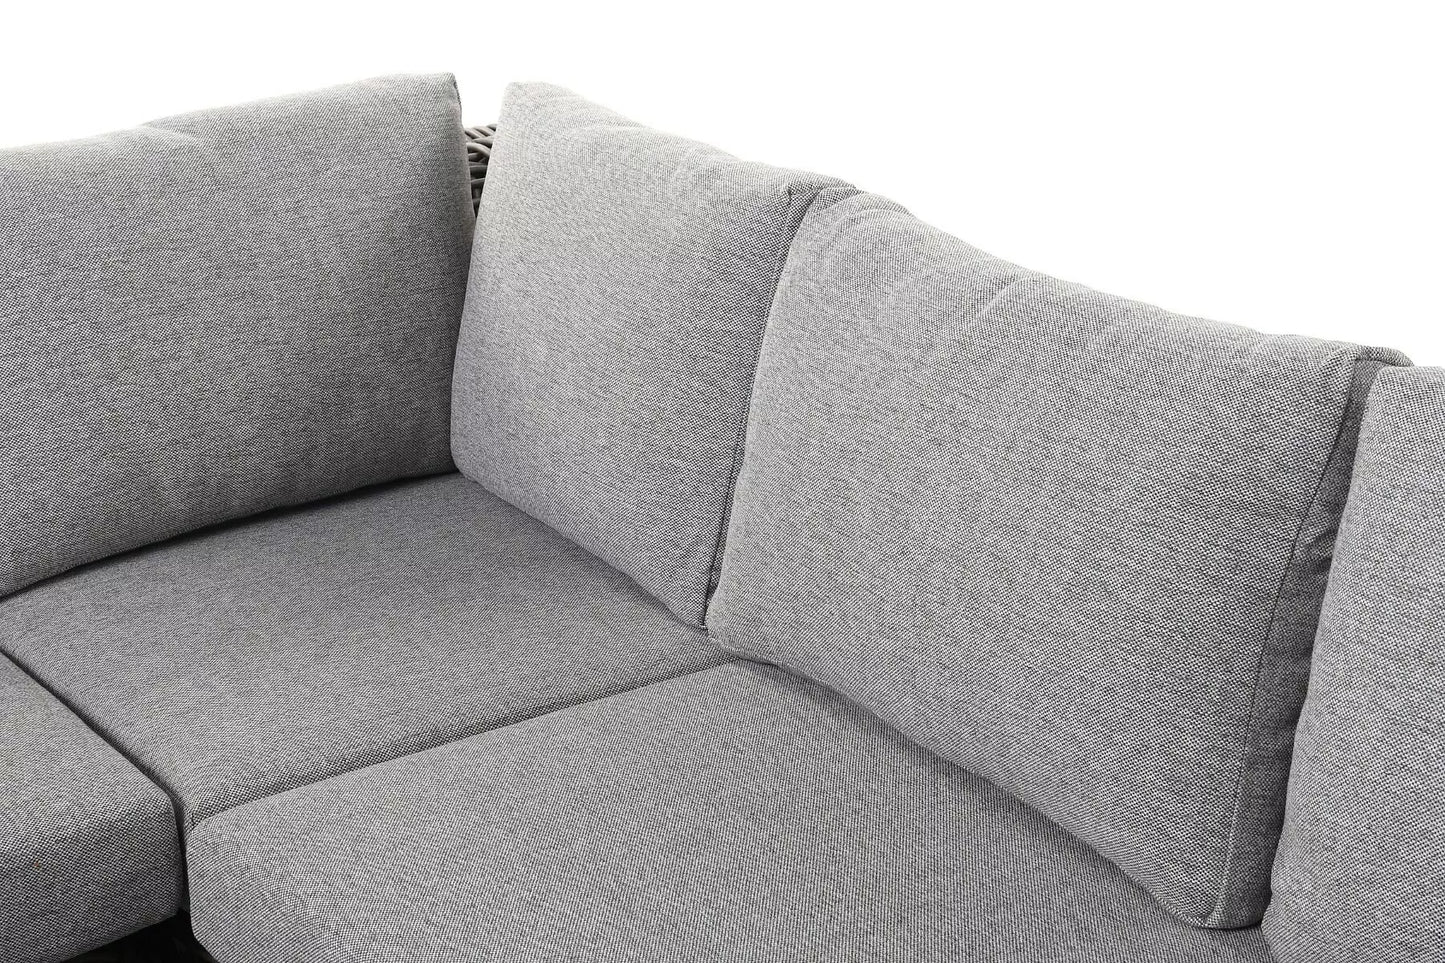 Lauko baldų komplektas Maje Grey, ekoratanas, 267x267x73cm, pilkos spalvos